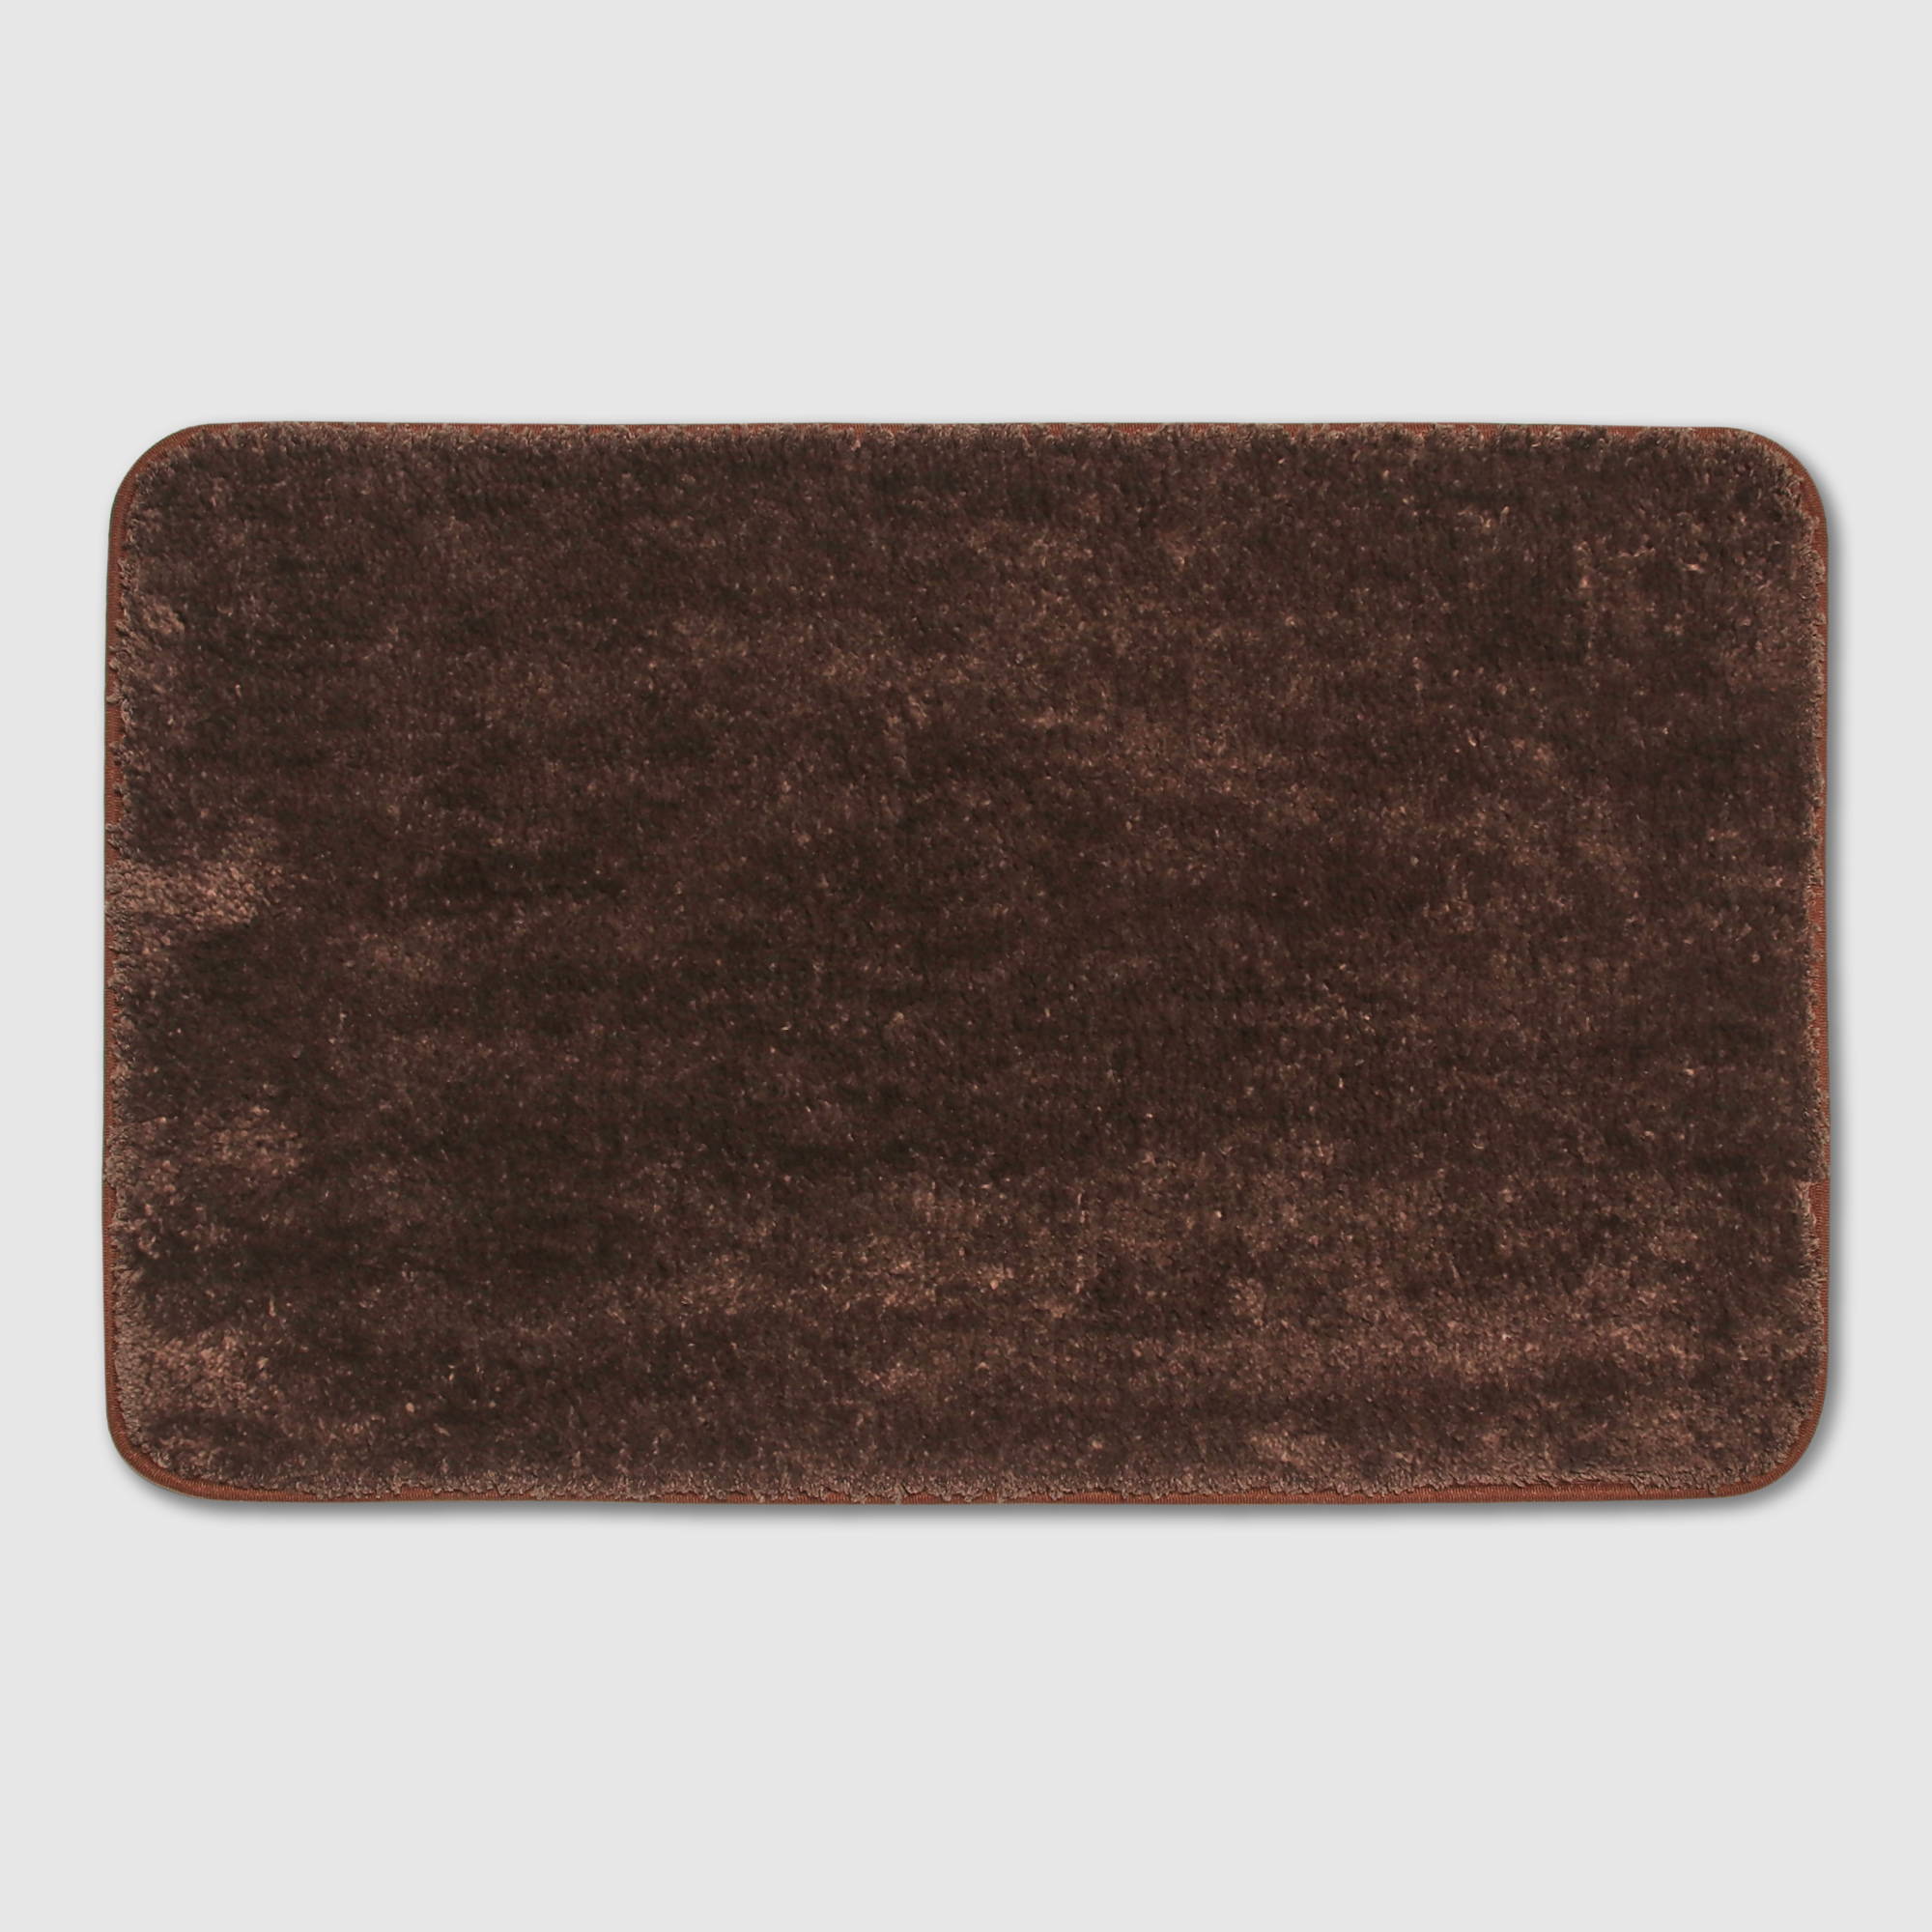 Коврик Silverstone Carpet коричневый 50х80 см коврик придверный x y carpet серый 50х80 см qrs301